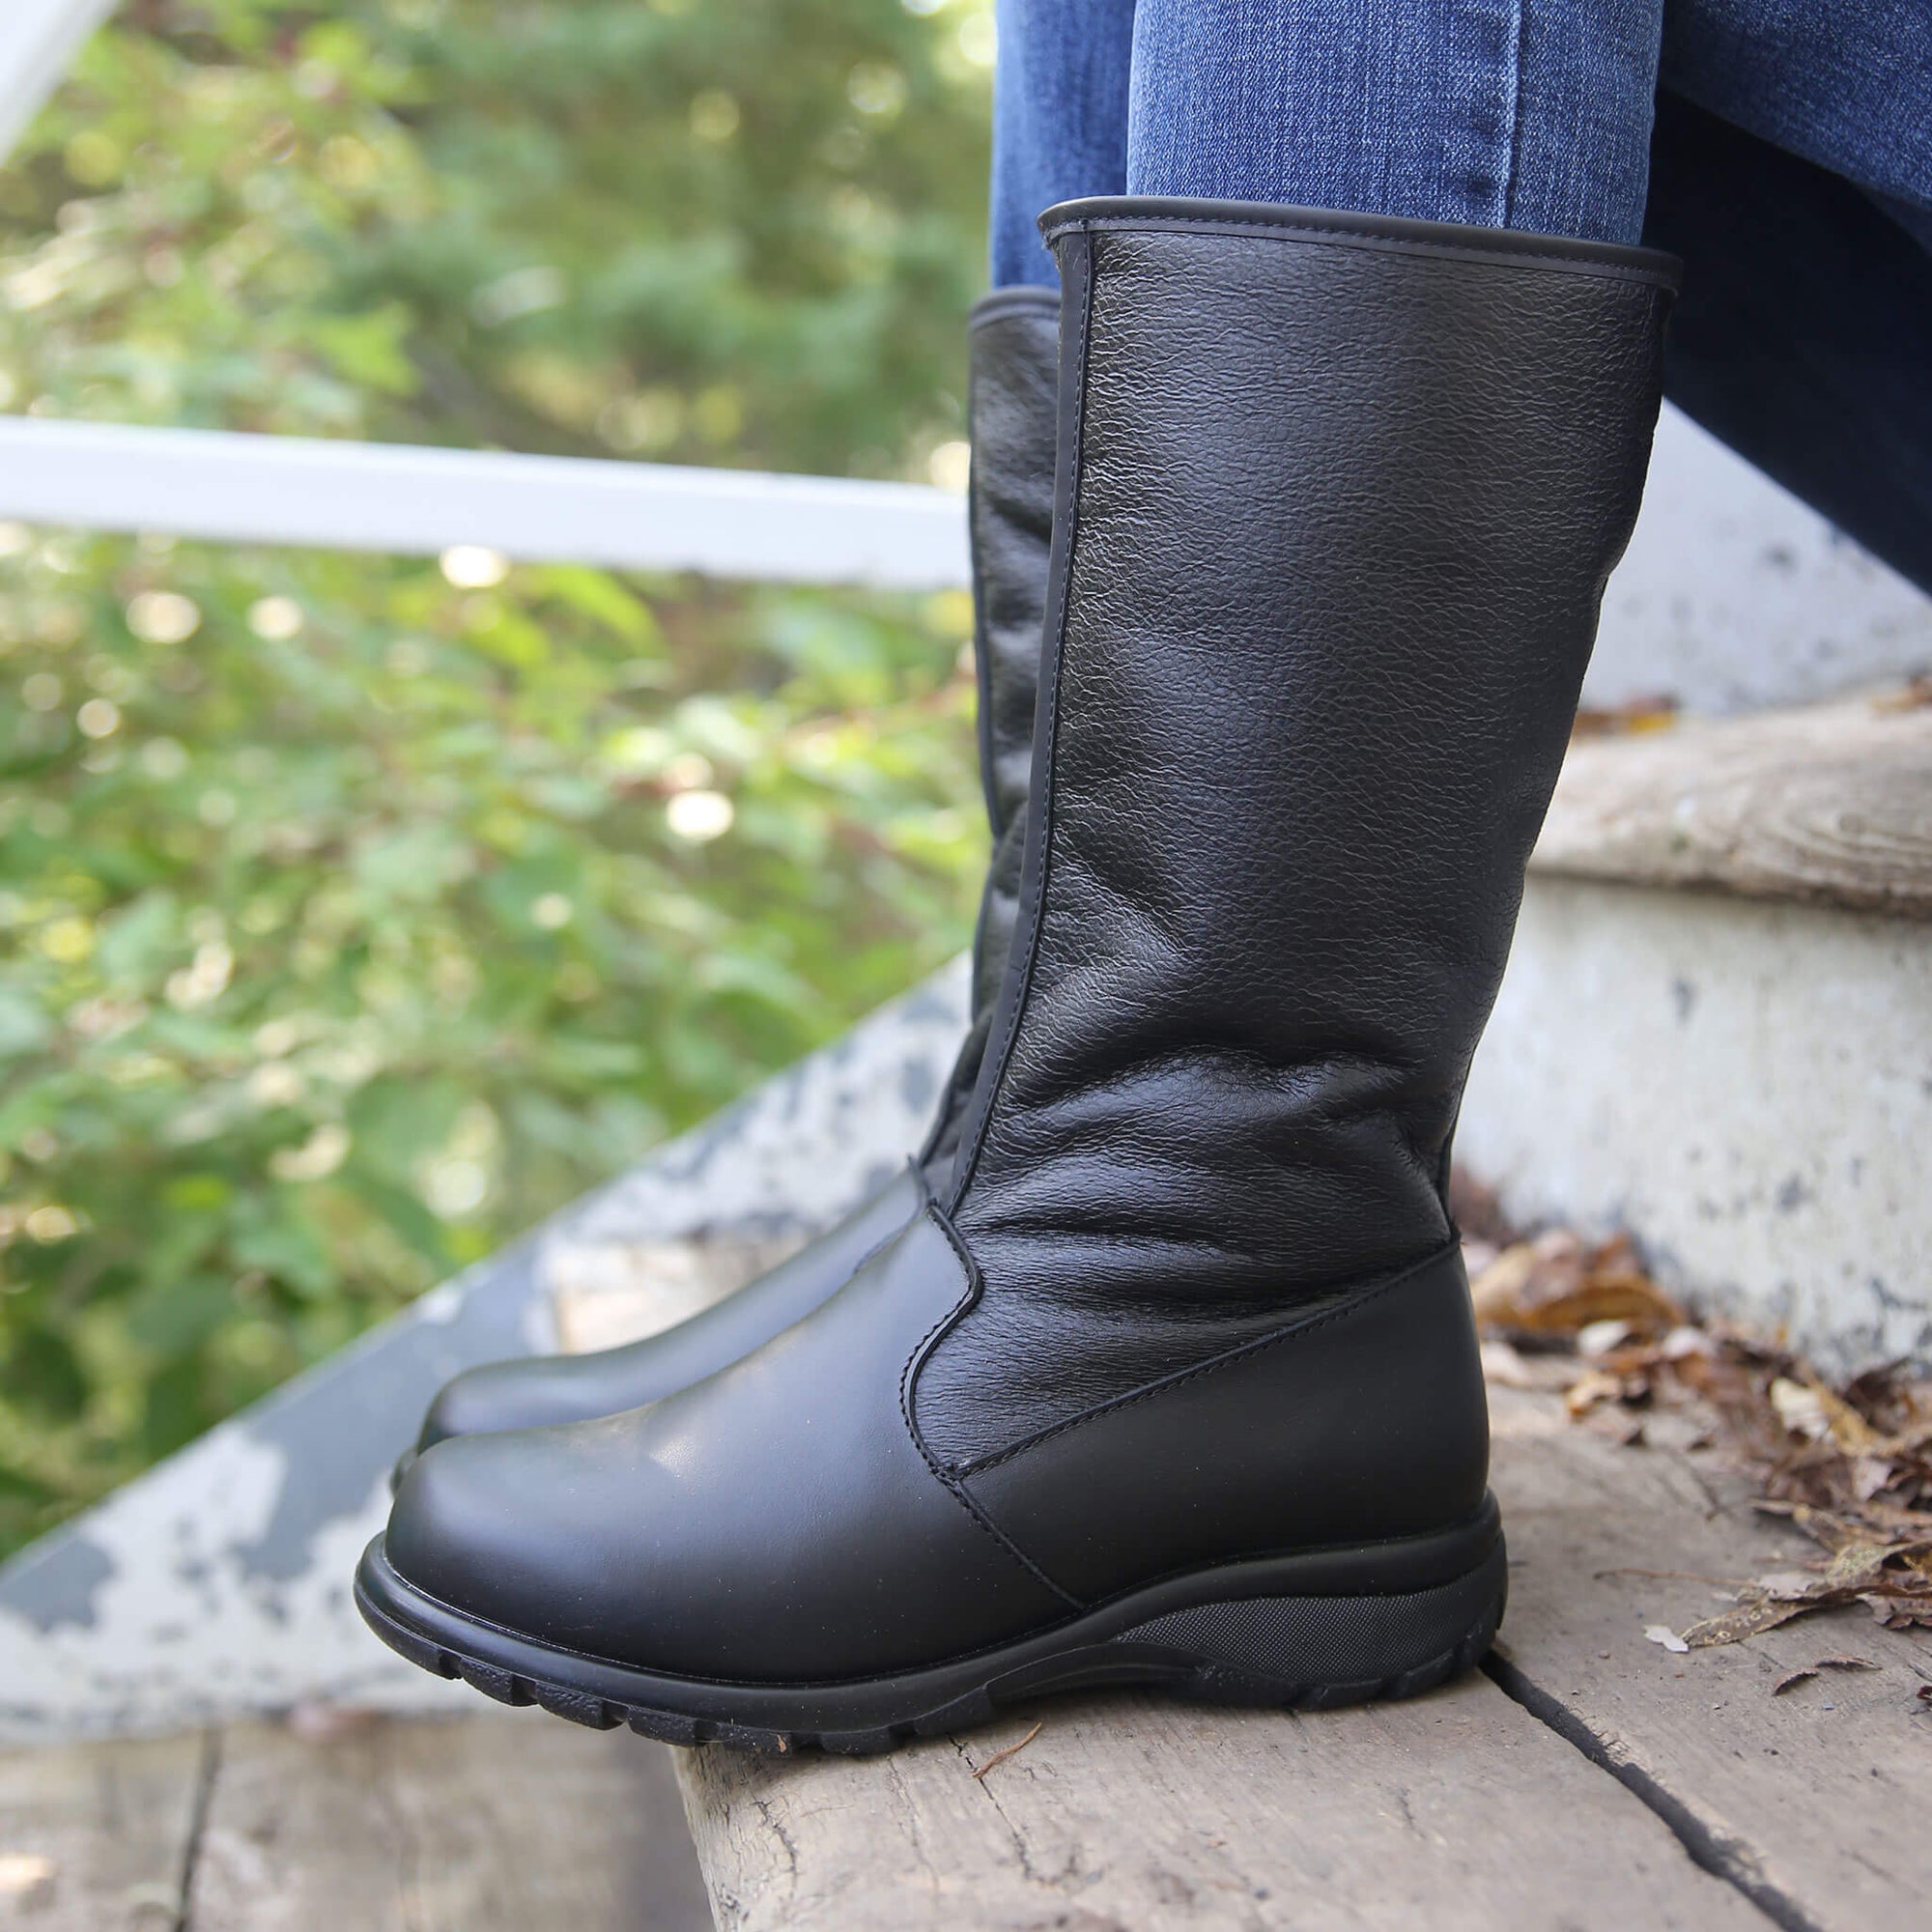 Shelter winter boot for women - Black